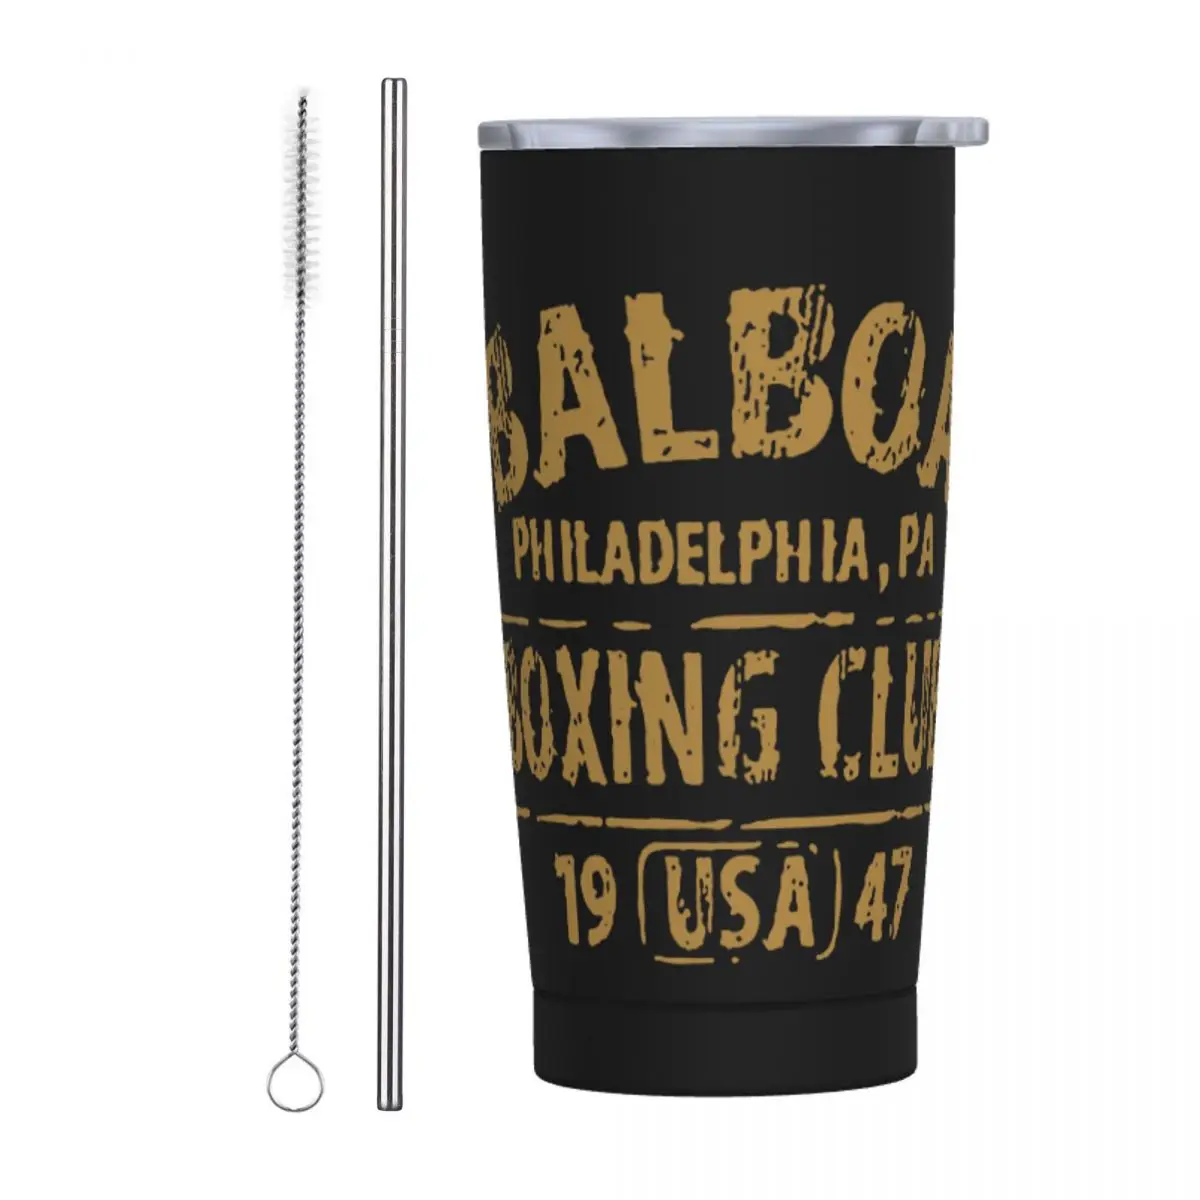 Rocky Balboa Боксерский клуб Перчатки 1947 Изолированный стакан с соломинками Вакуумная термокружка Офисные домашние автомобильные бутылки Чашки, 20 унций